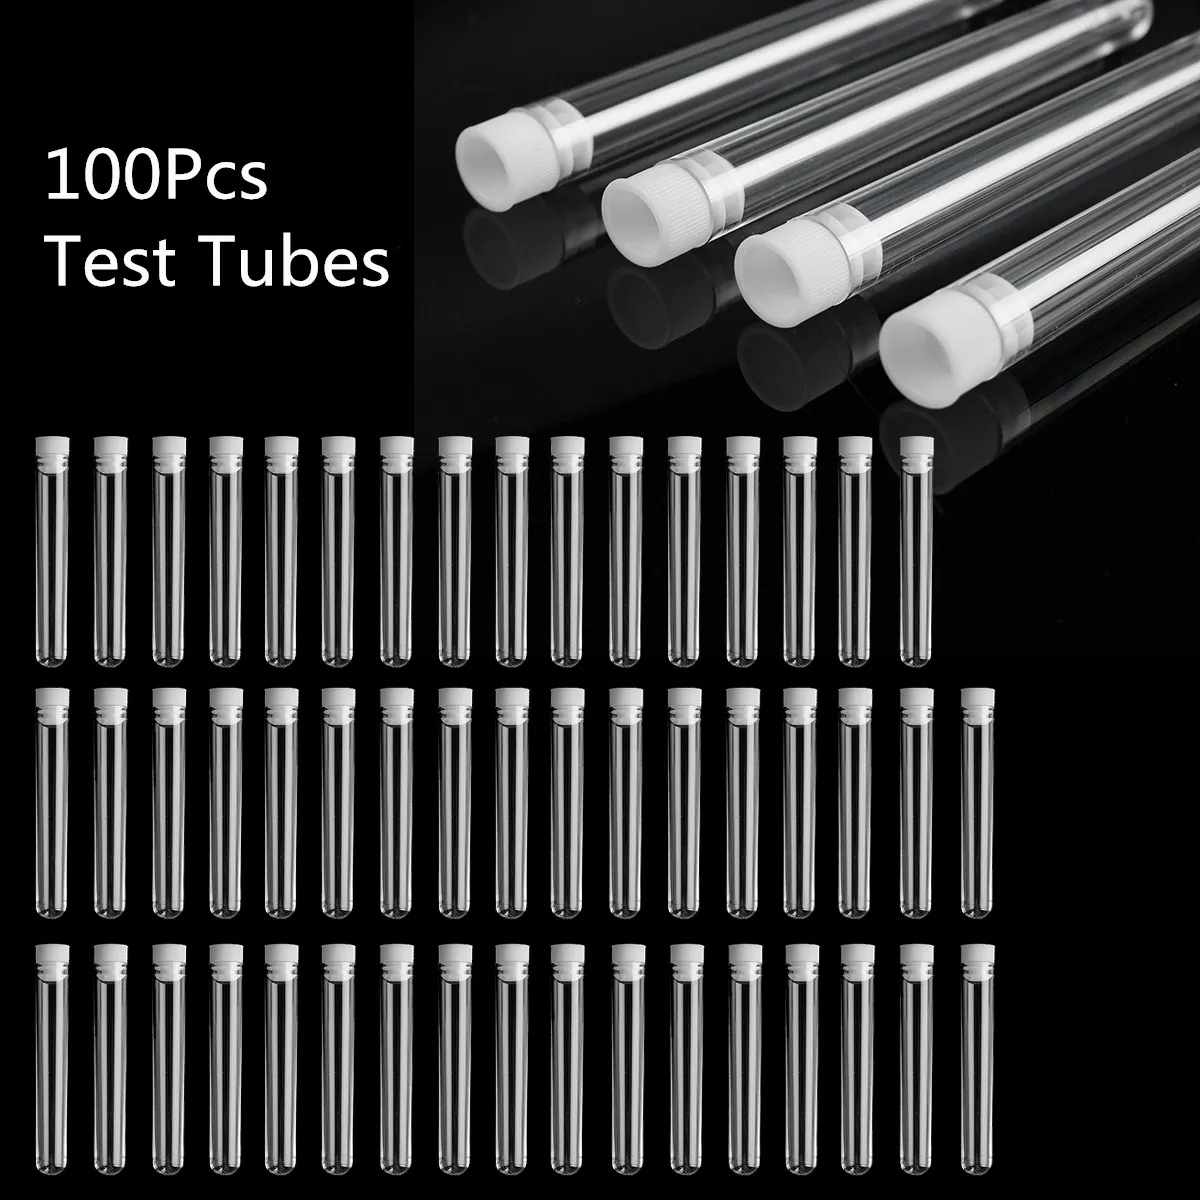 100buc Plastic Clar Eprubetă Cu Capac 12x100mm în formă de U de Jos Lungă Transparent Tub de Testare de Laborator Consumabile